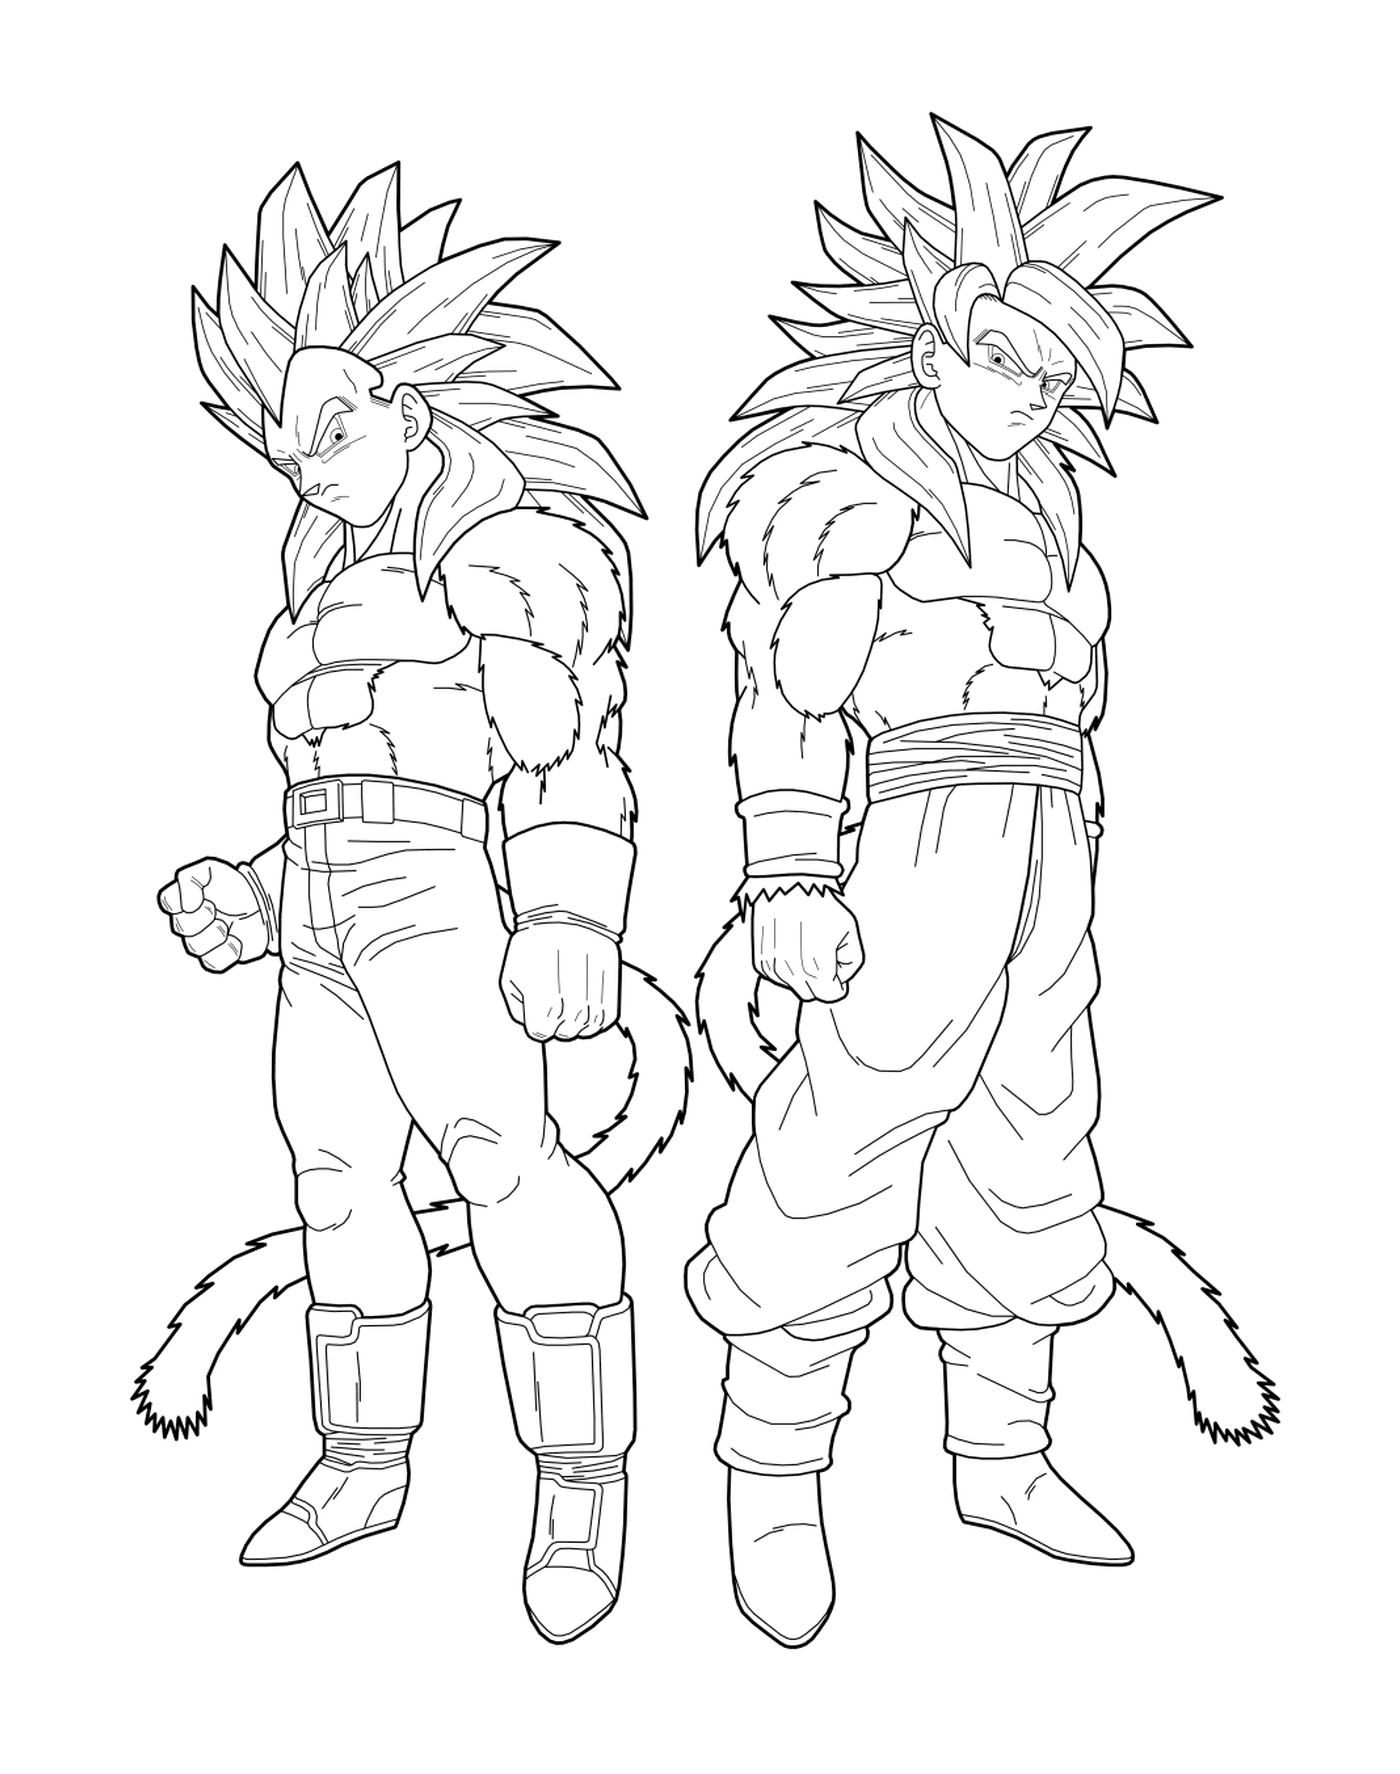   Goku et Vegeta unis 